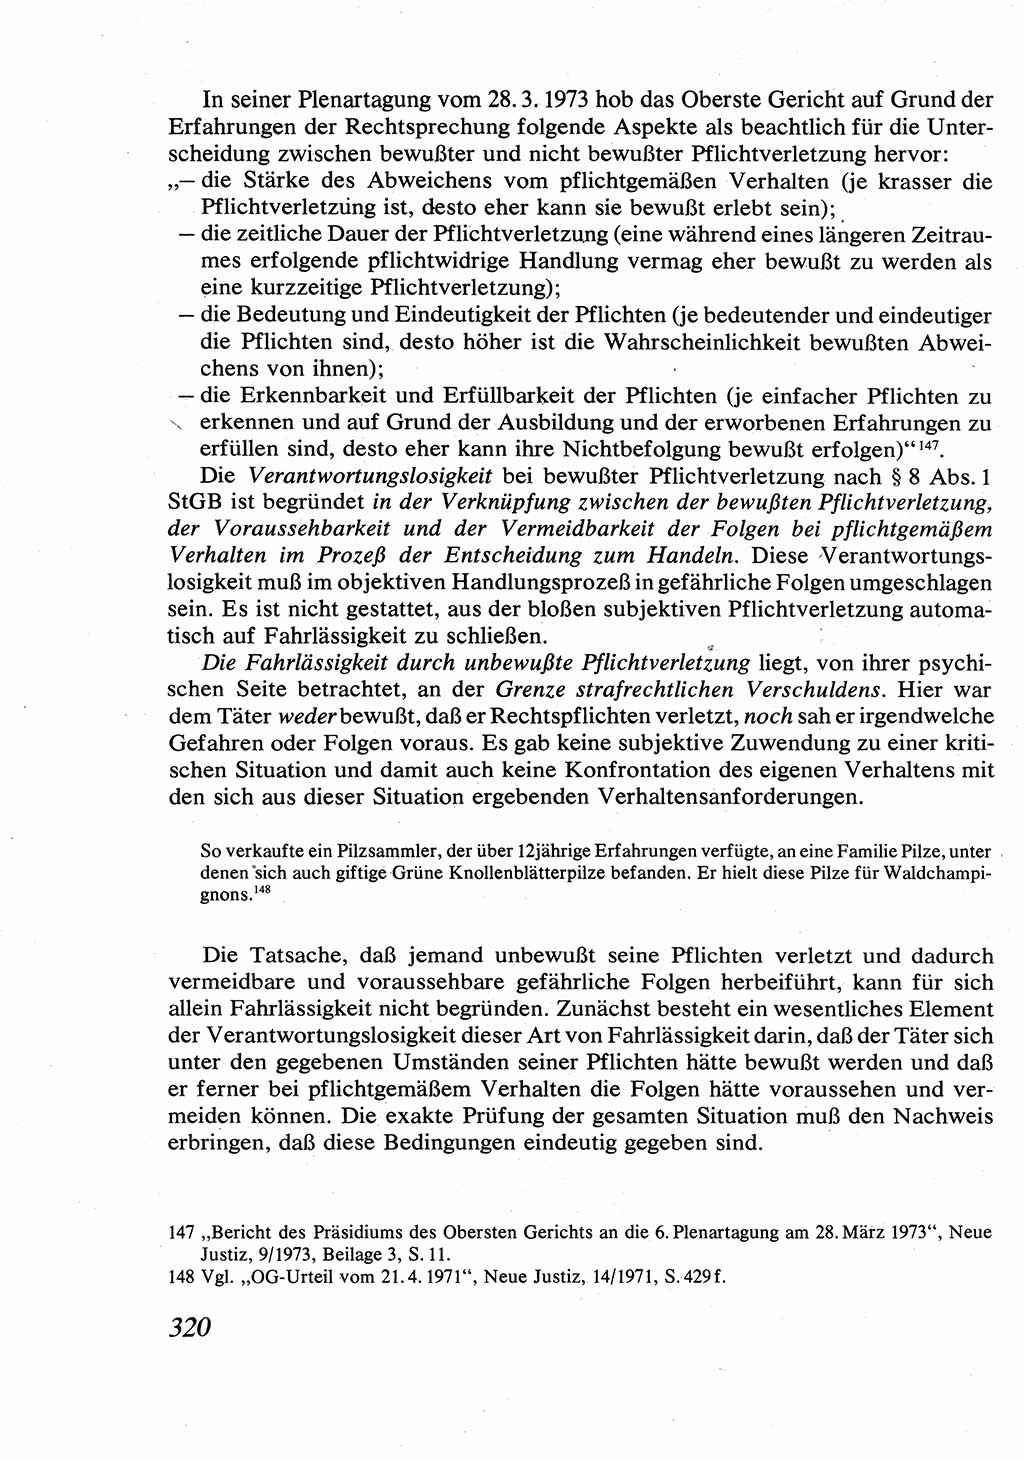 Strafrecht [Deutsche Demokratische Republik (DDR)], Allgemeiner Teil, Lehrbuch 1976, Seite 320 (Strafr. DDR AT Lb. 1976, S. 320)